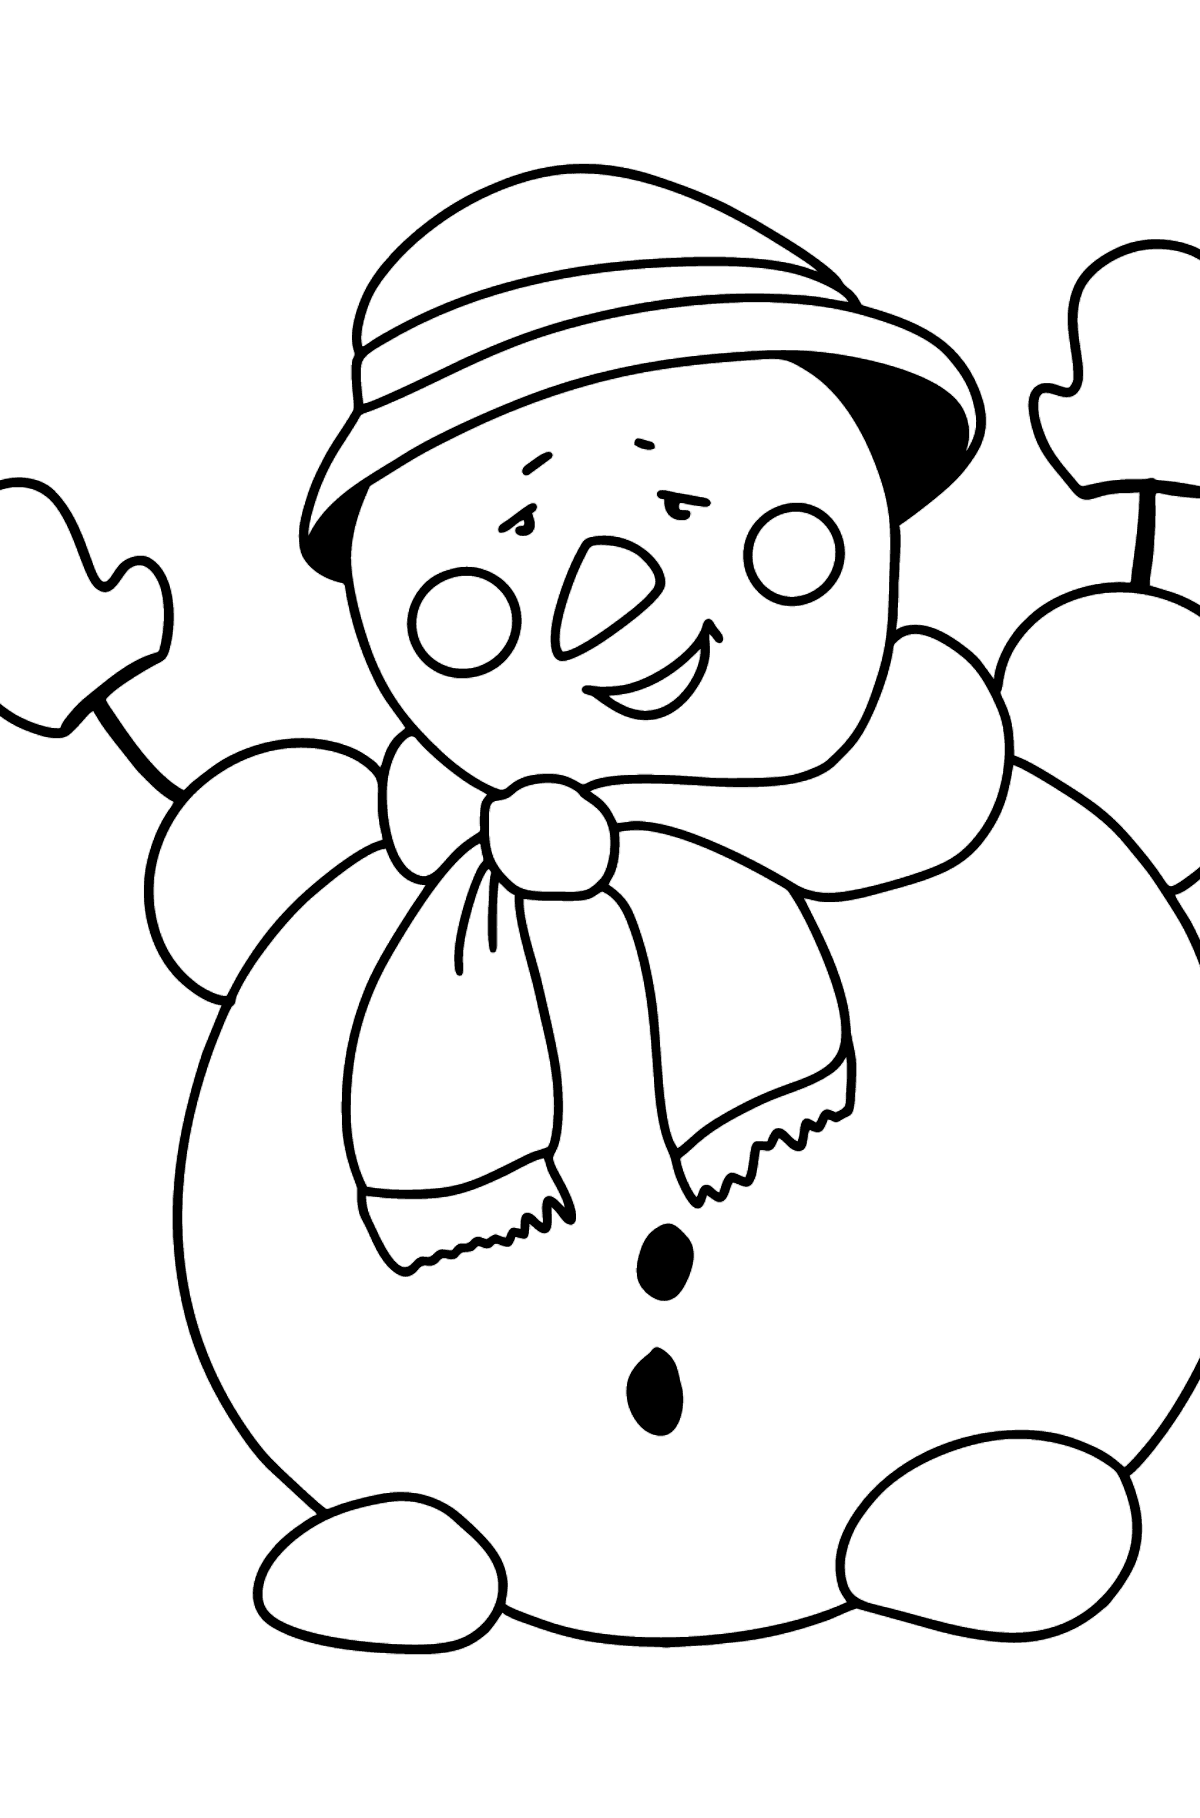 Dibujo para colorear de muñeco de nieve feliz - Dibujos para Colorear para Niños